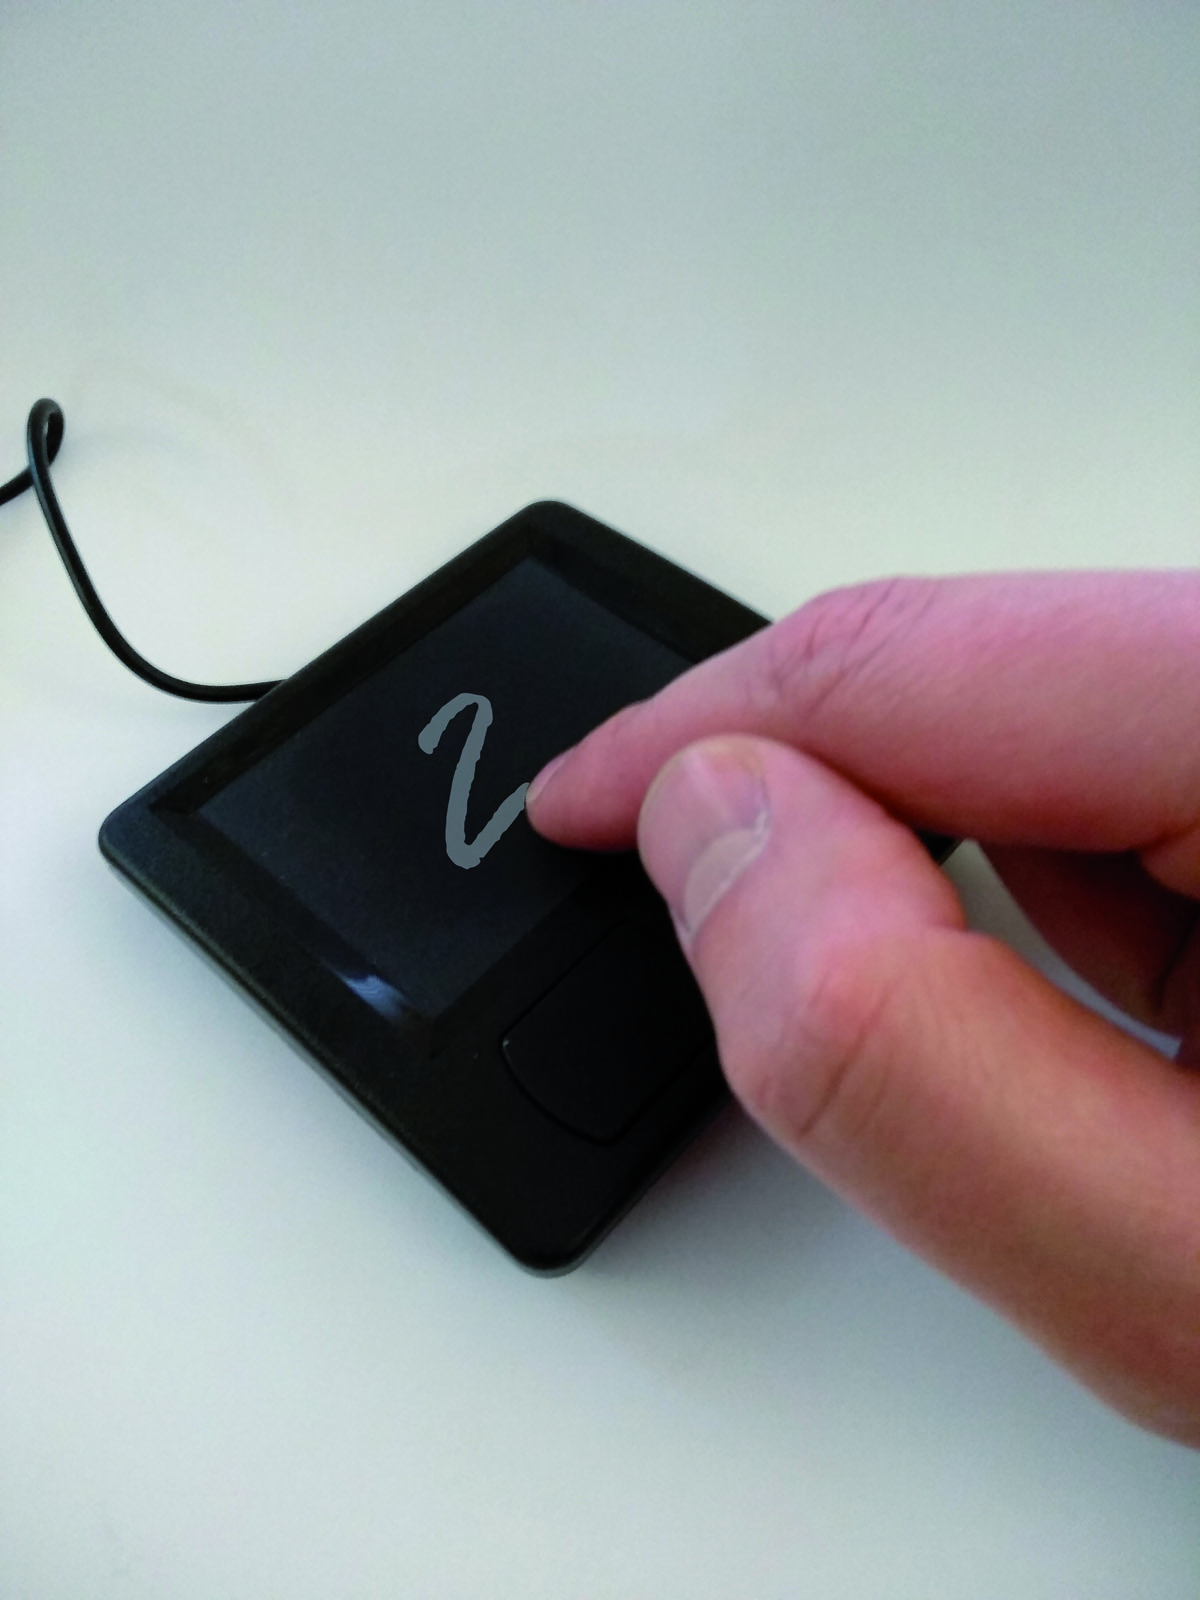 AIfES-Demonstrator zur Handschriftenerkennung. Auf diesem PS/2-Touchpad werden die Ziffern mit der Hand gezeichnet und dann vom Mikrocontroller erkannt und ausgegeben.